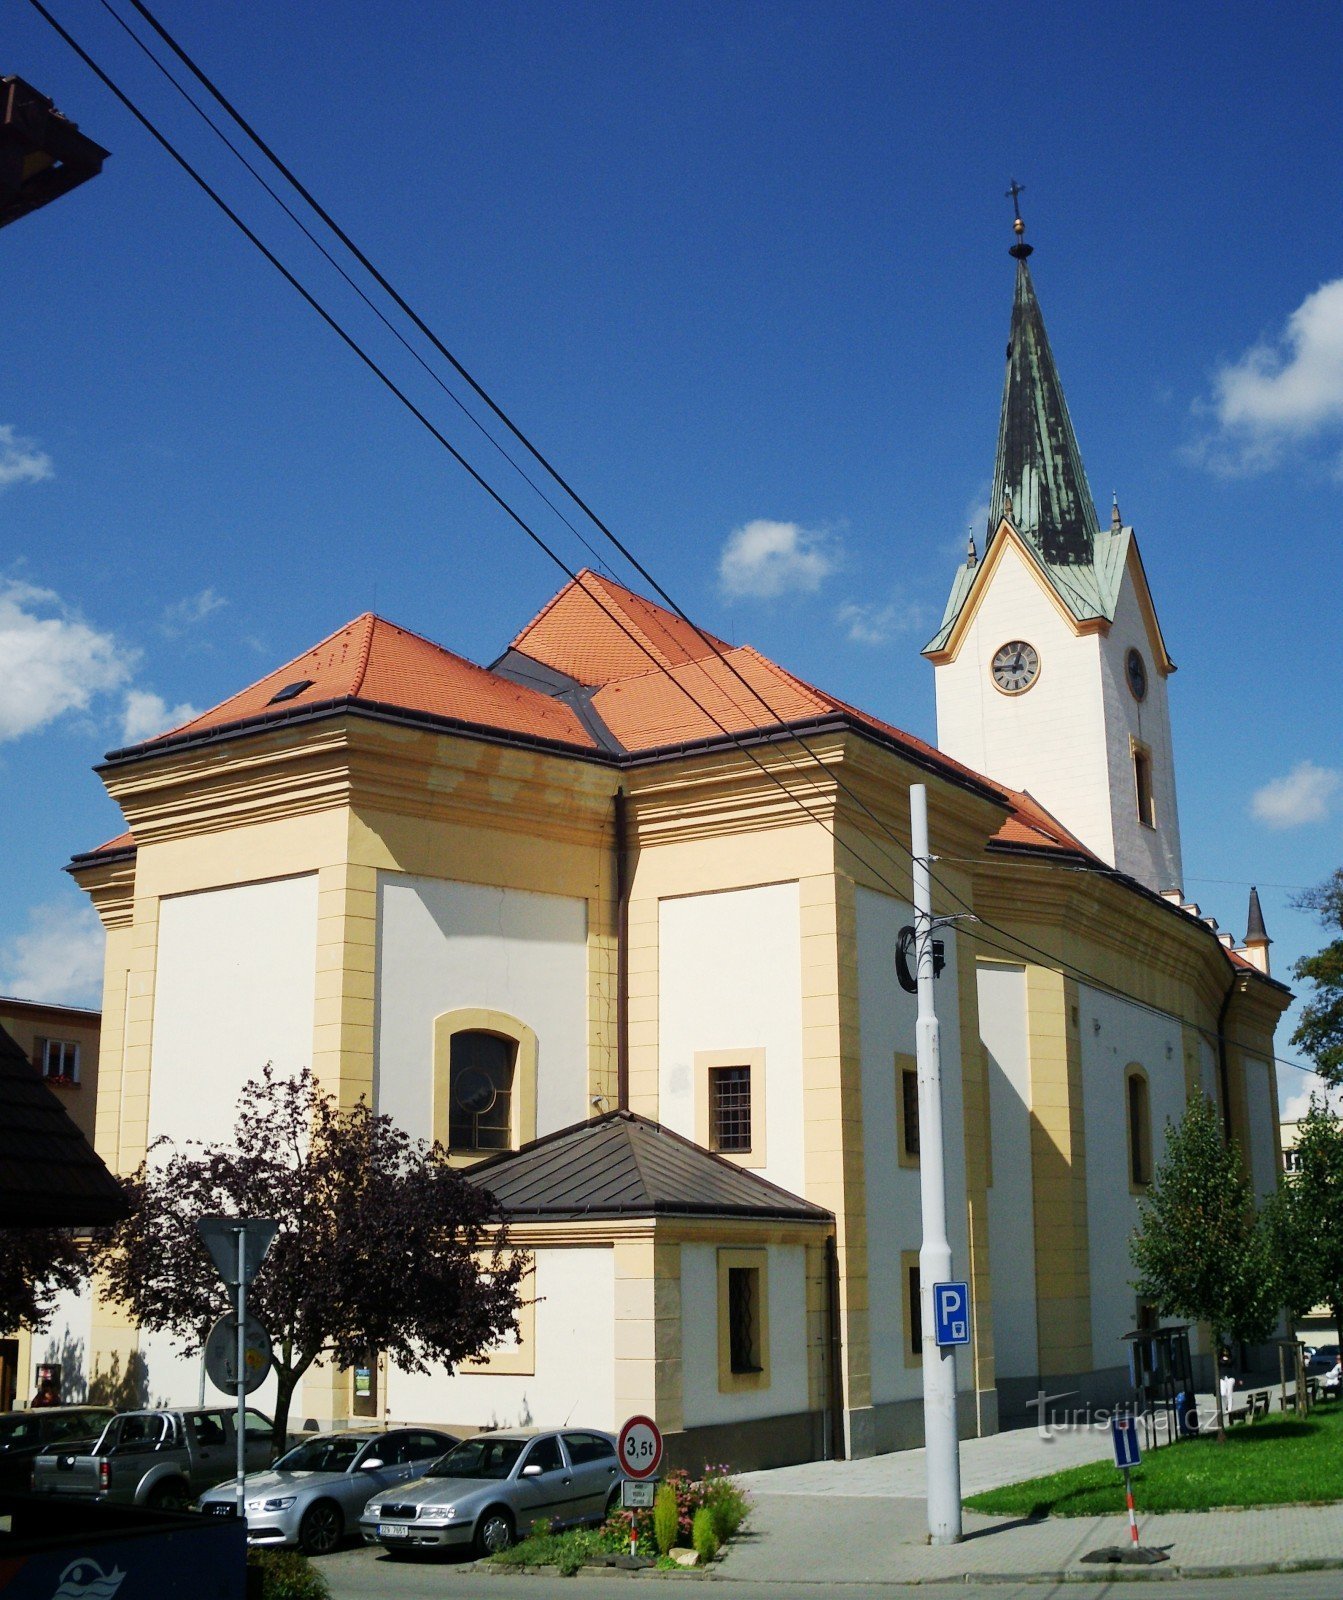 Злин - церковь св. Филипп и Джейкоб